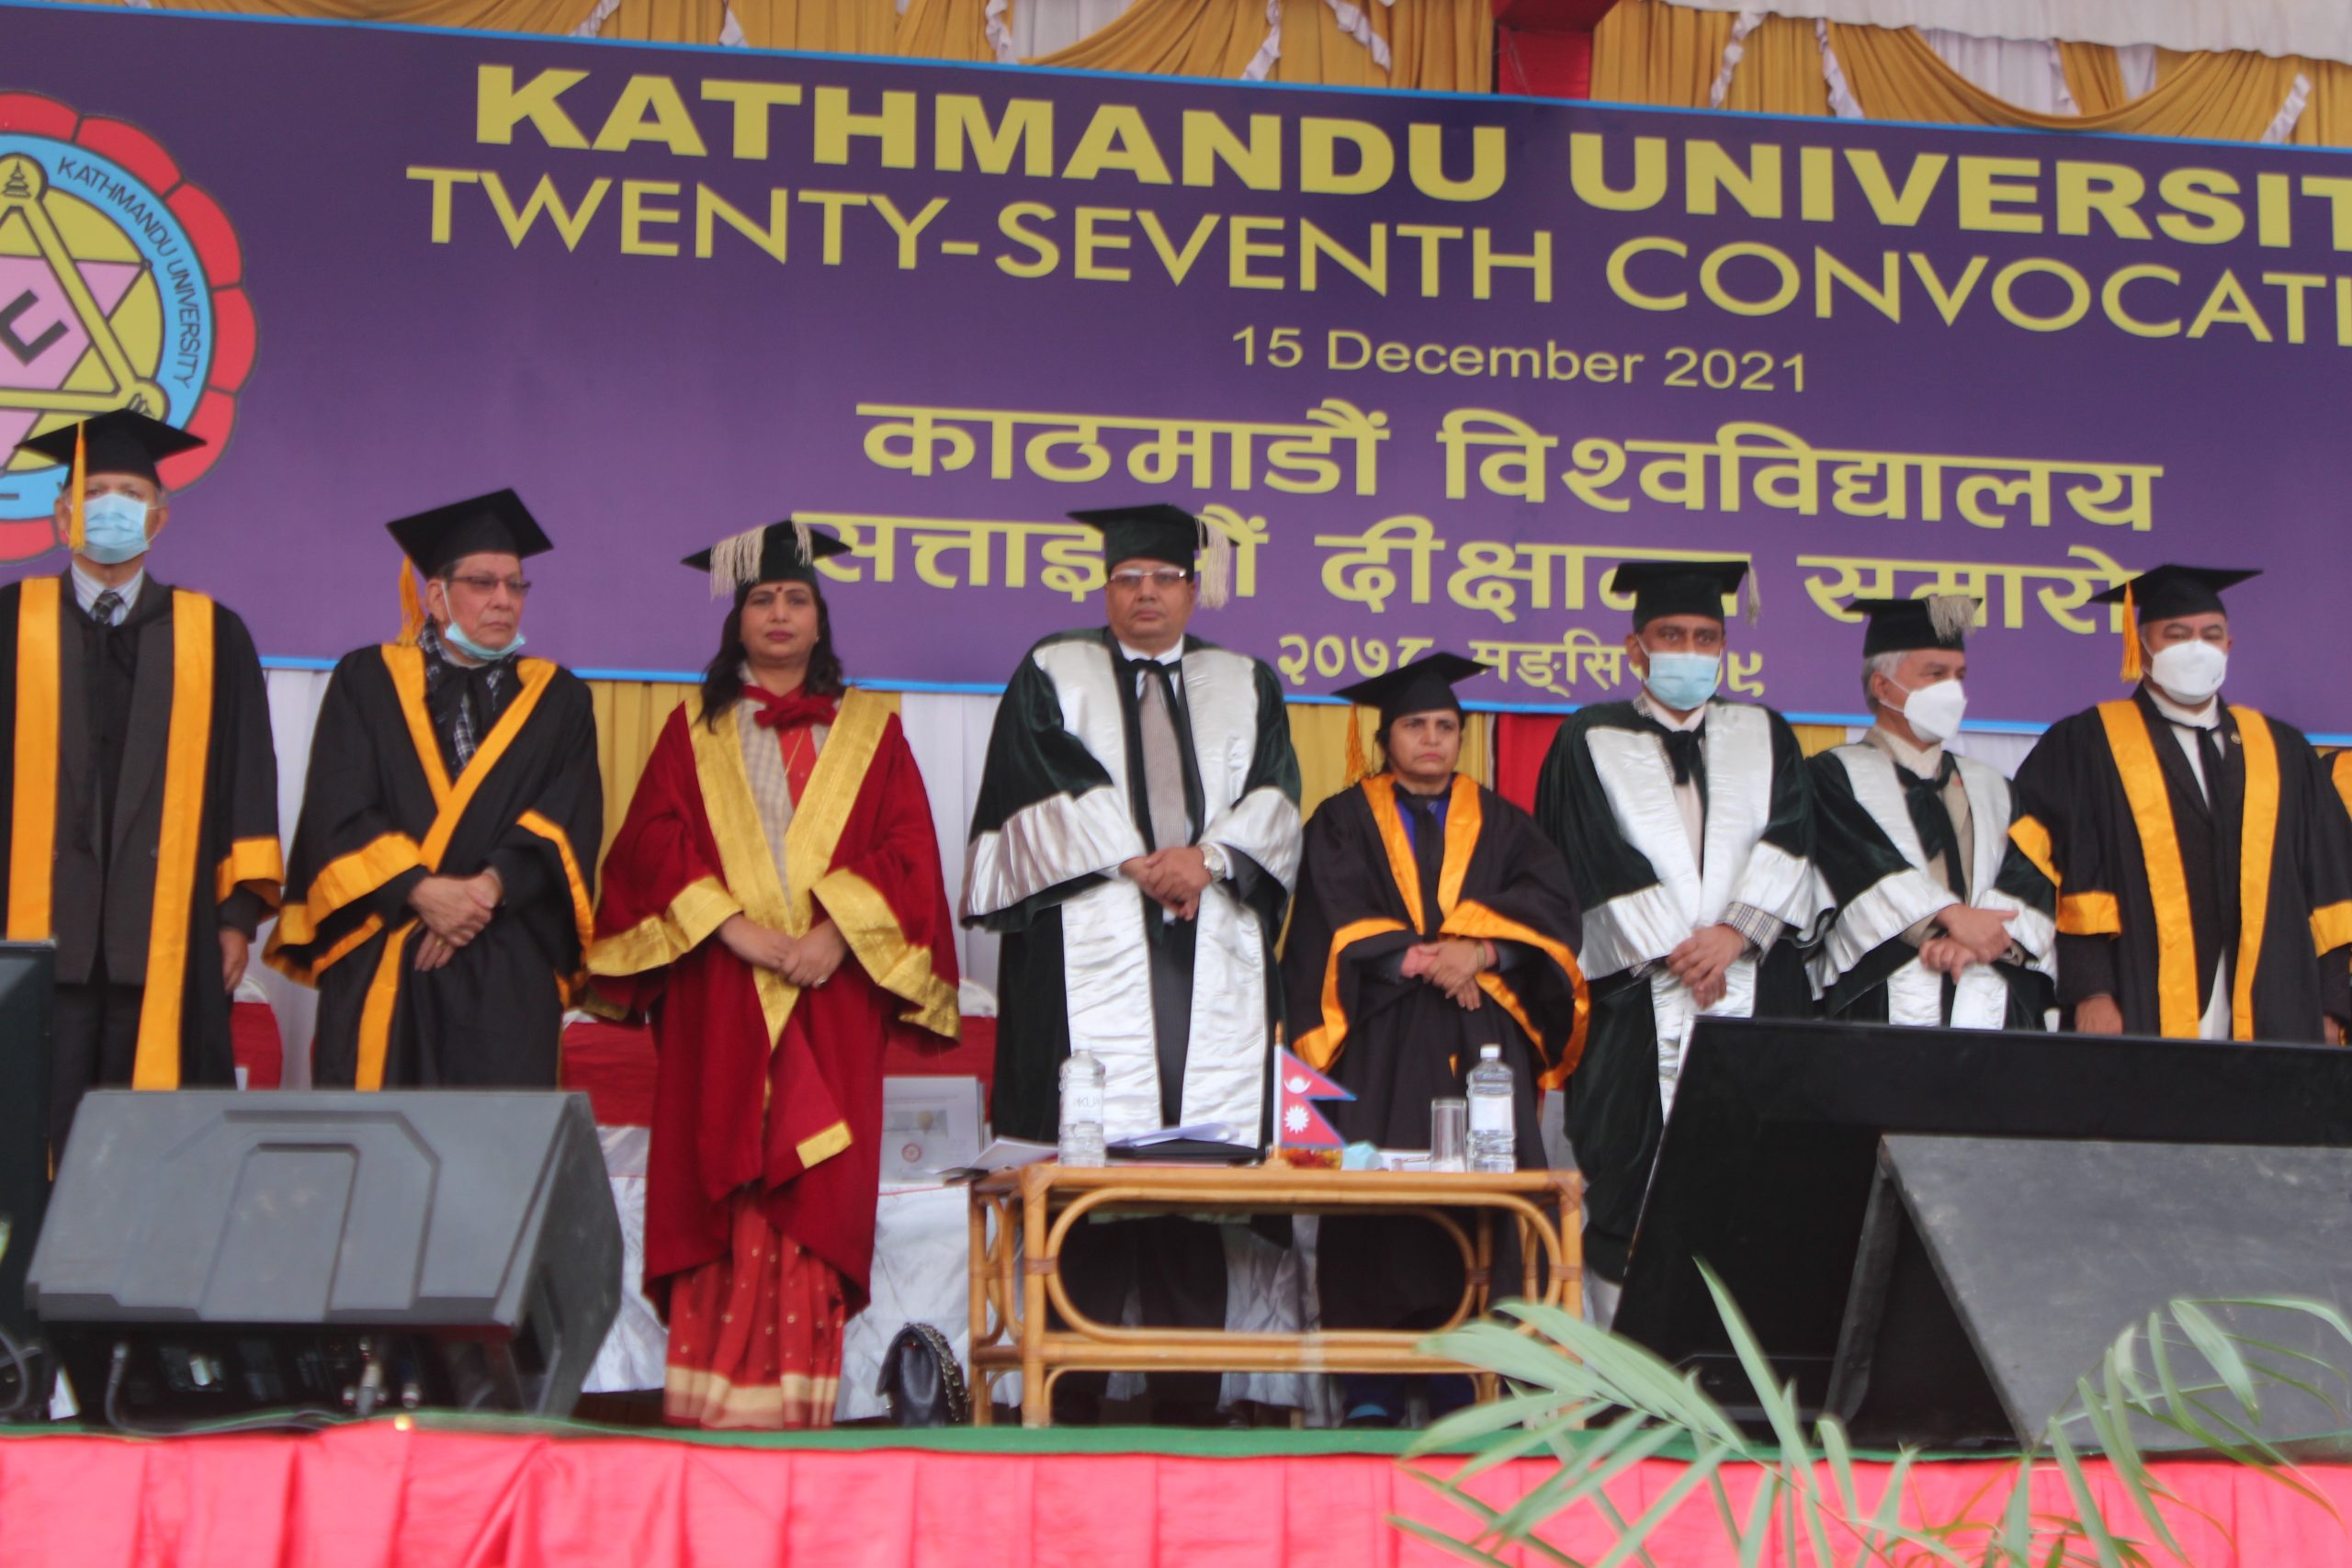 काठमाडौँ विश्वविद्यालयको २७ औँ दीक्षान्त समारोह सम्पन्न